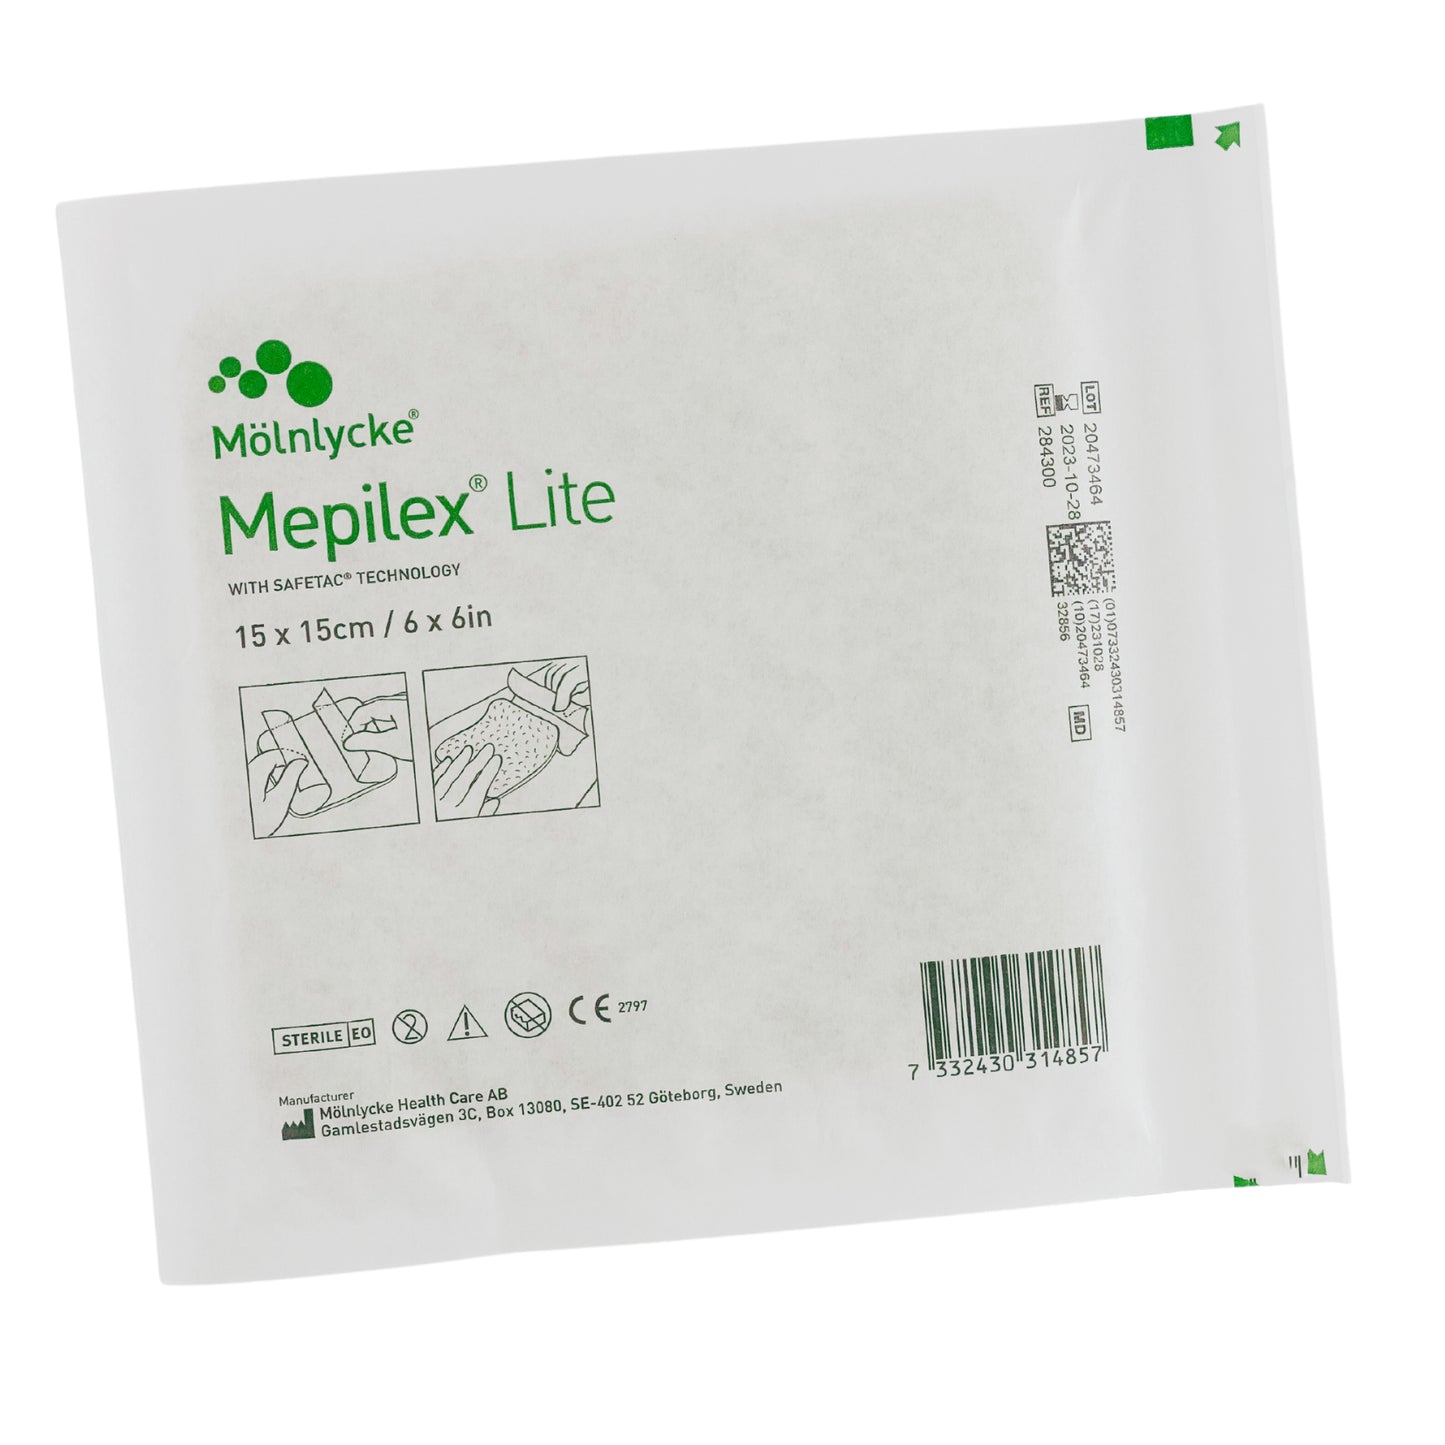 Mepilex Lite